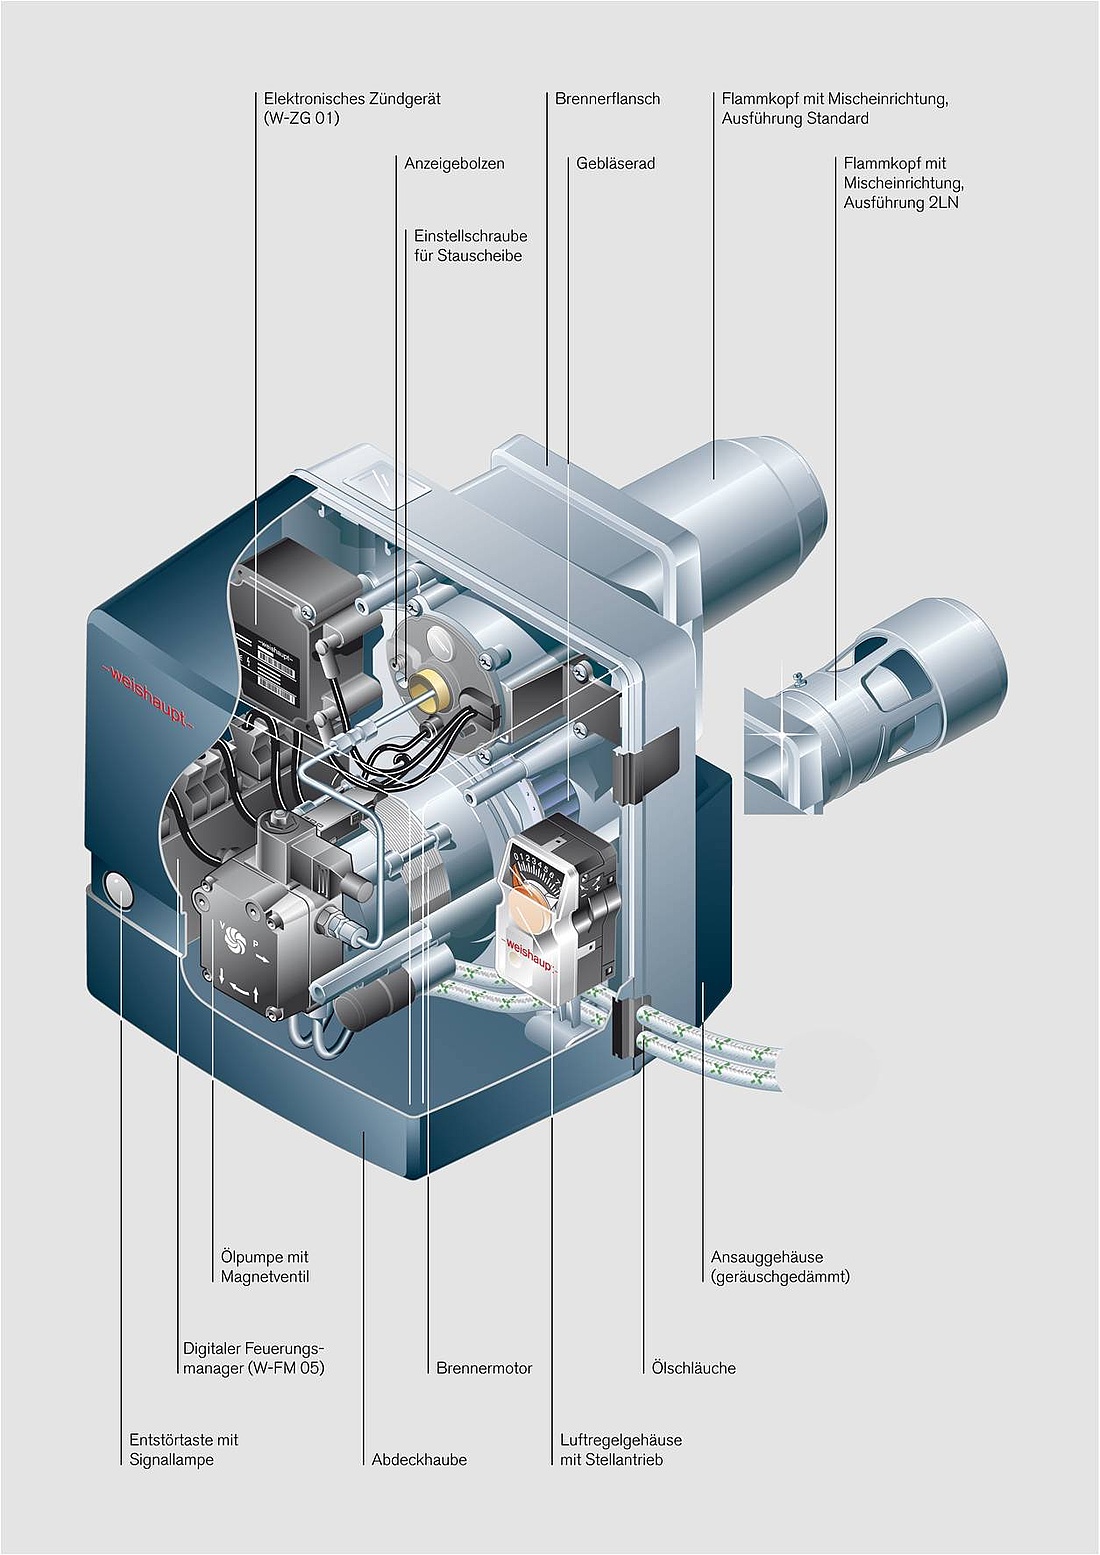 Schnittbild eines Öl-Brenners (WL5) mit Standard Flammkopf und einer Leistung von 16,5 bis 55 kW (Abb.: Max Weishaupt GmbH)